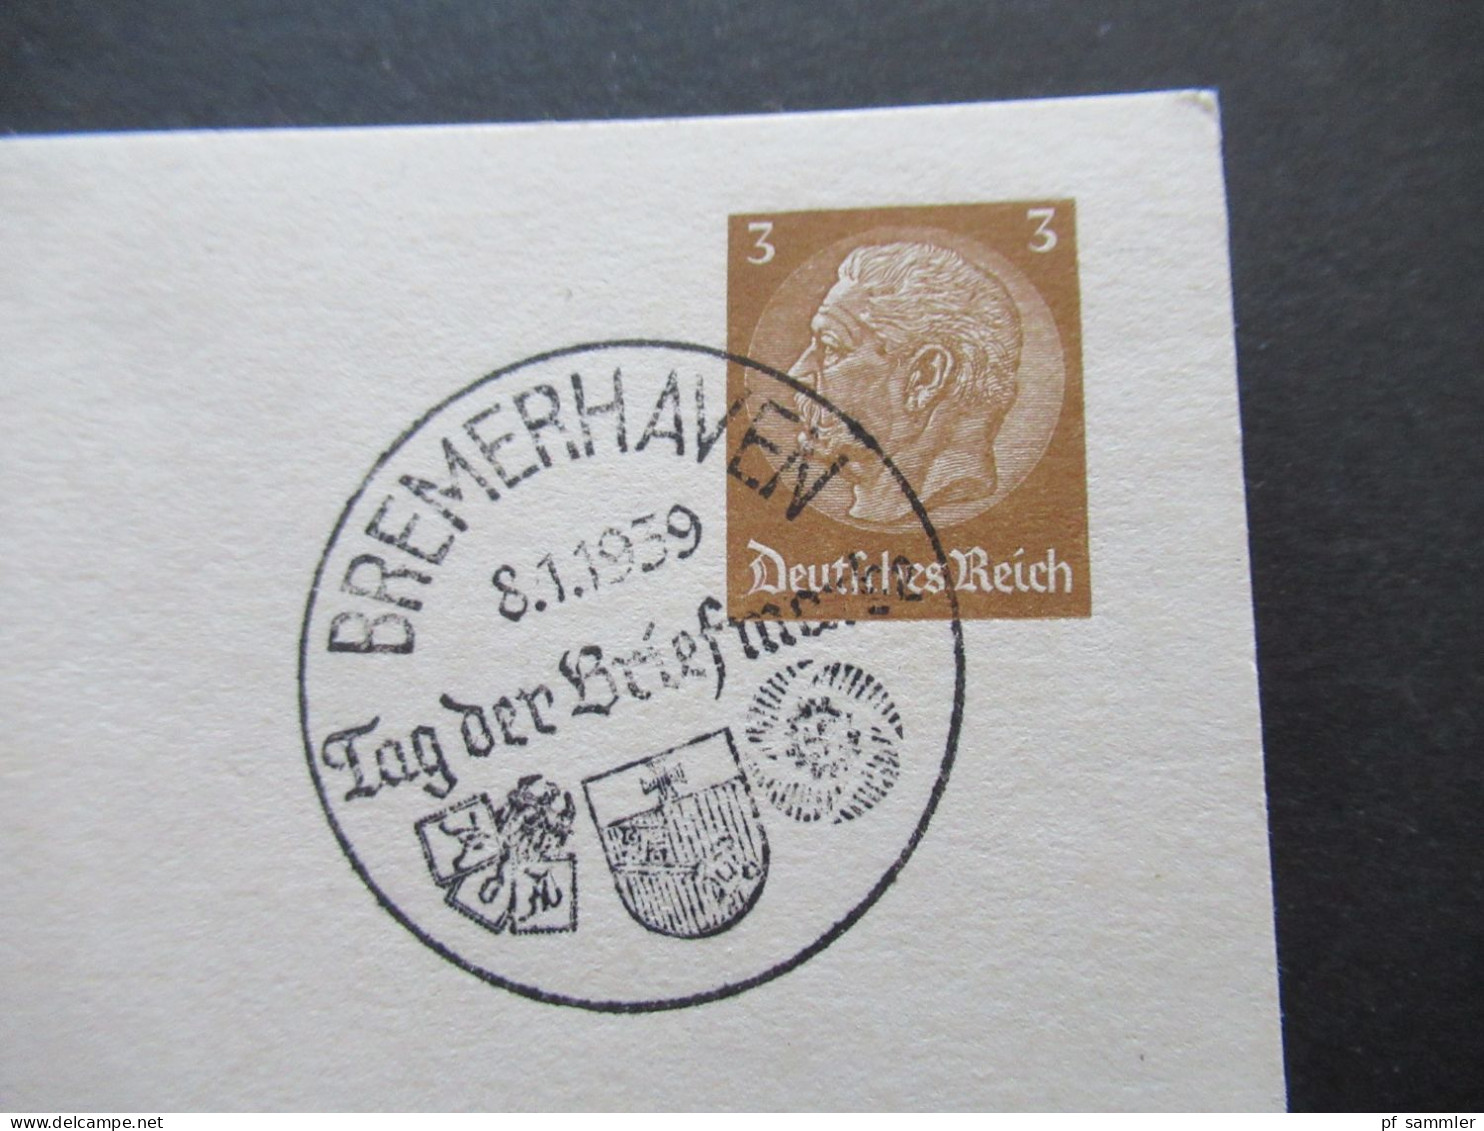 1939 Tag Der Briefmarke Sonder PK P 239 / 01 Mit Sonderstempel Bremerhaven Tag Der Briefmarke Reichsbund Der Philatelist - Postcards